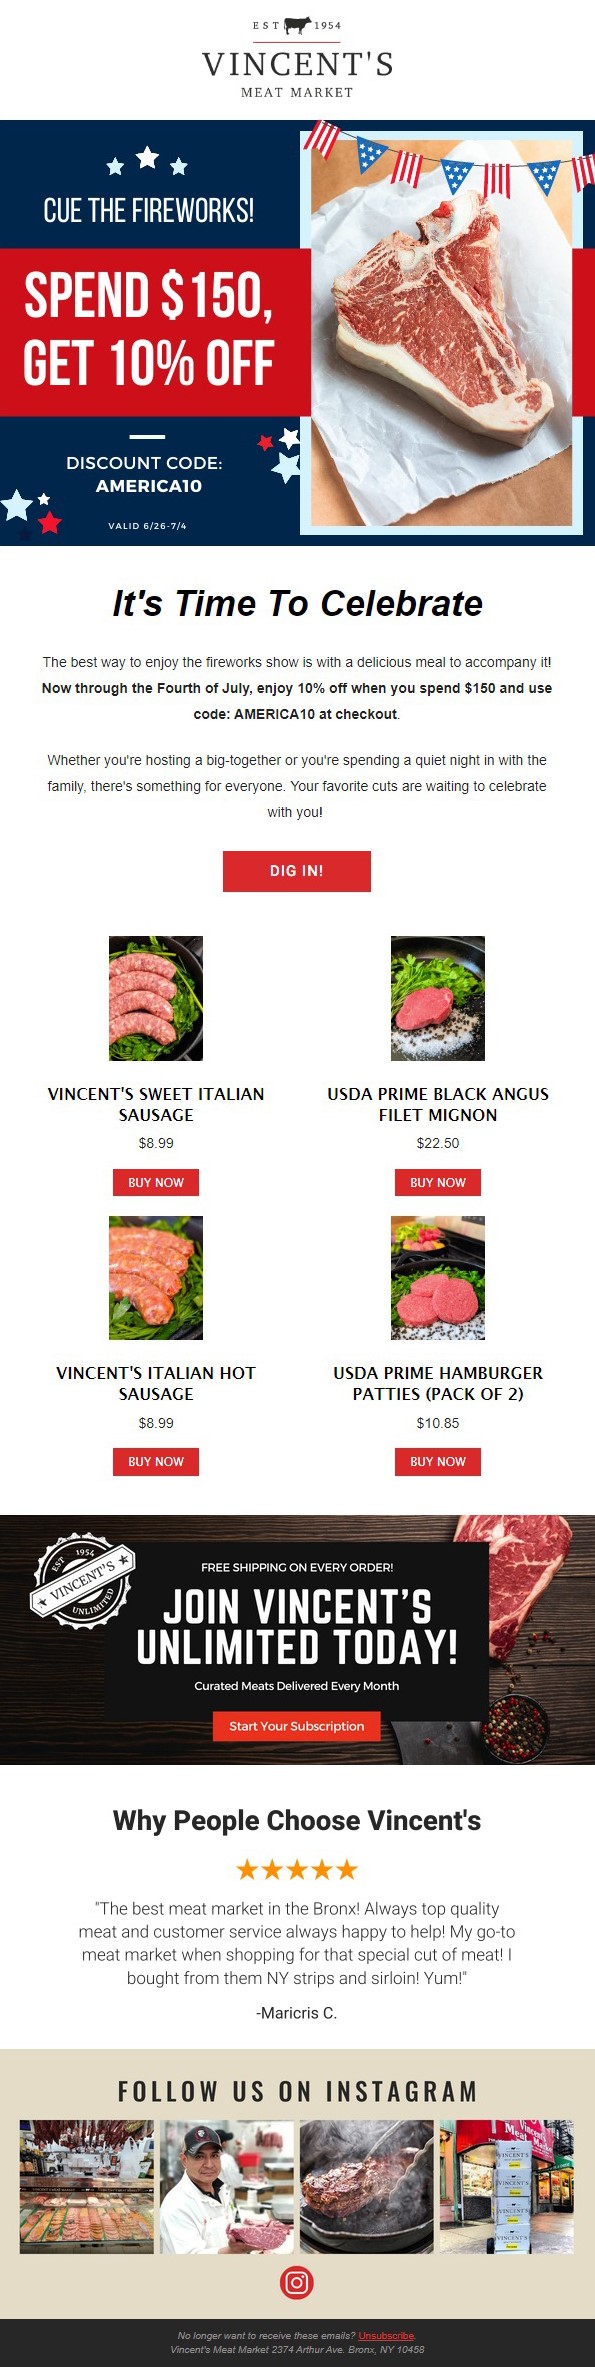 Vincent's Meat Market